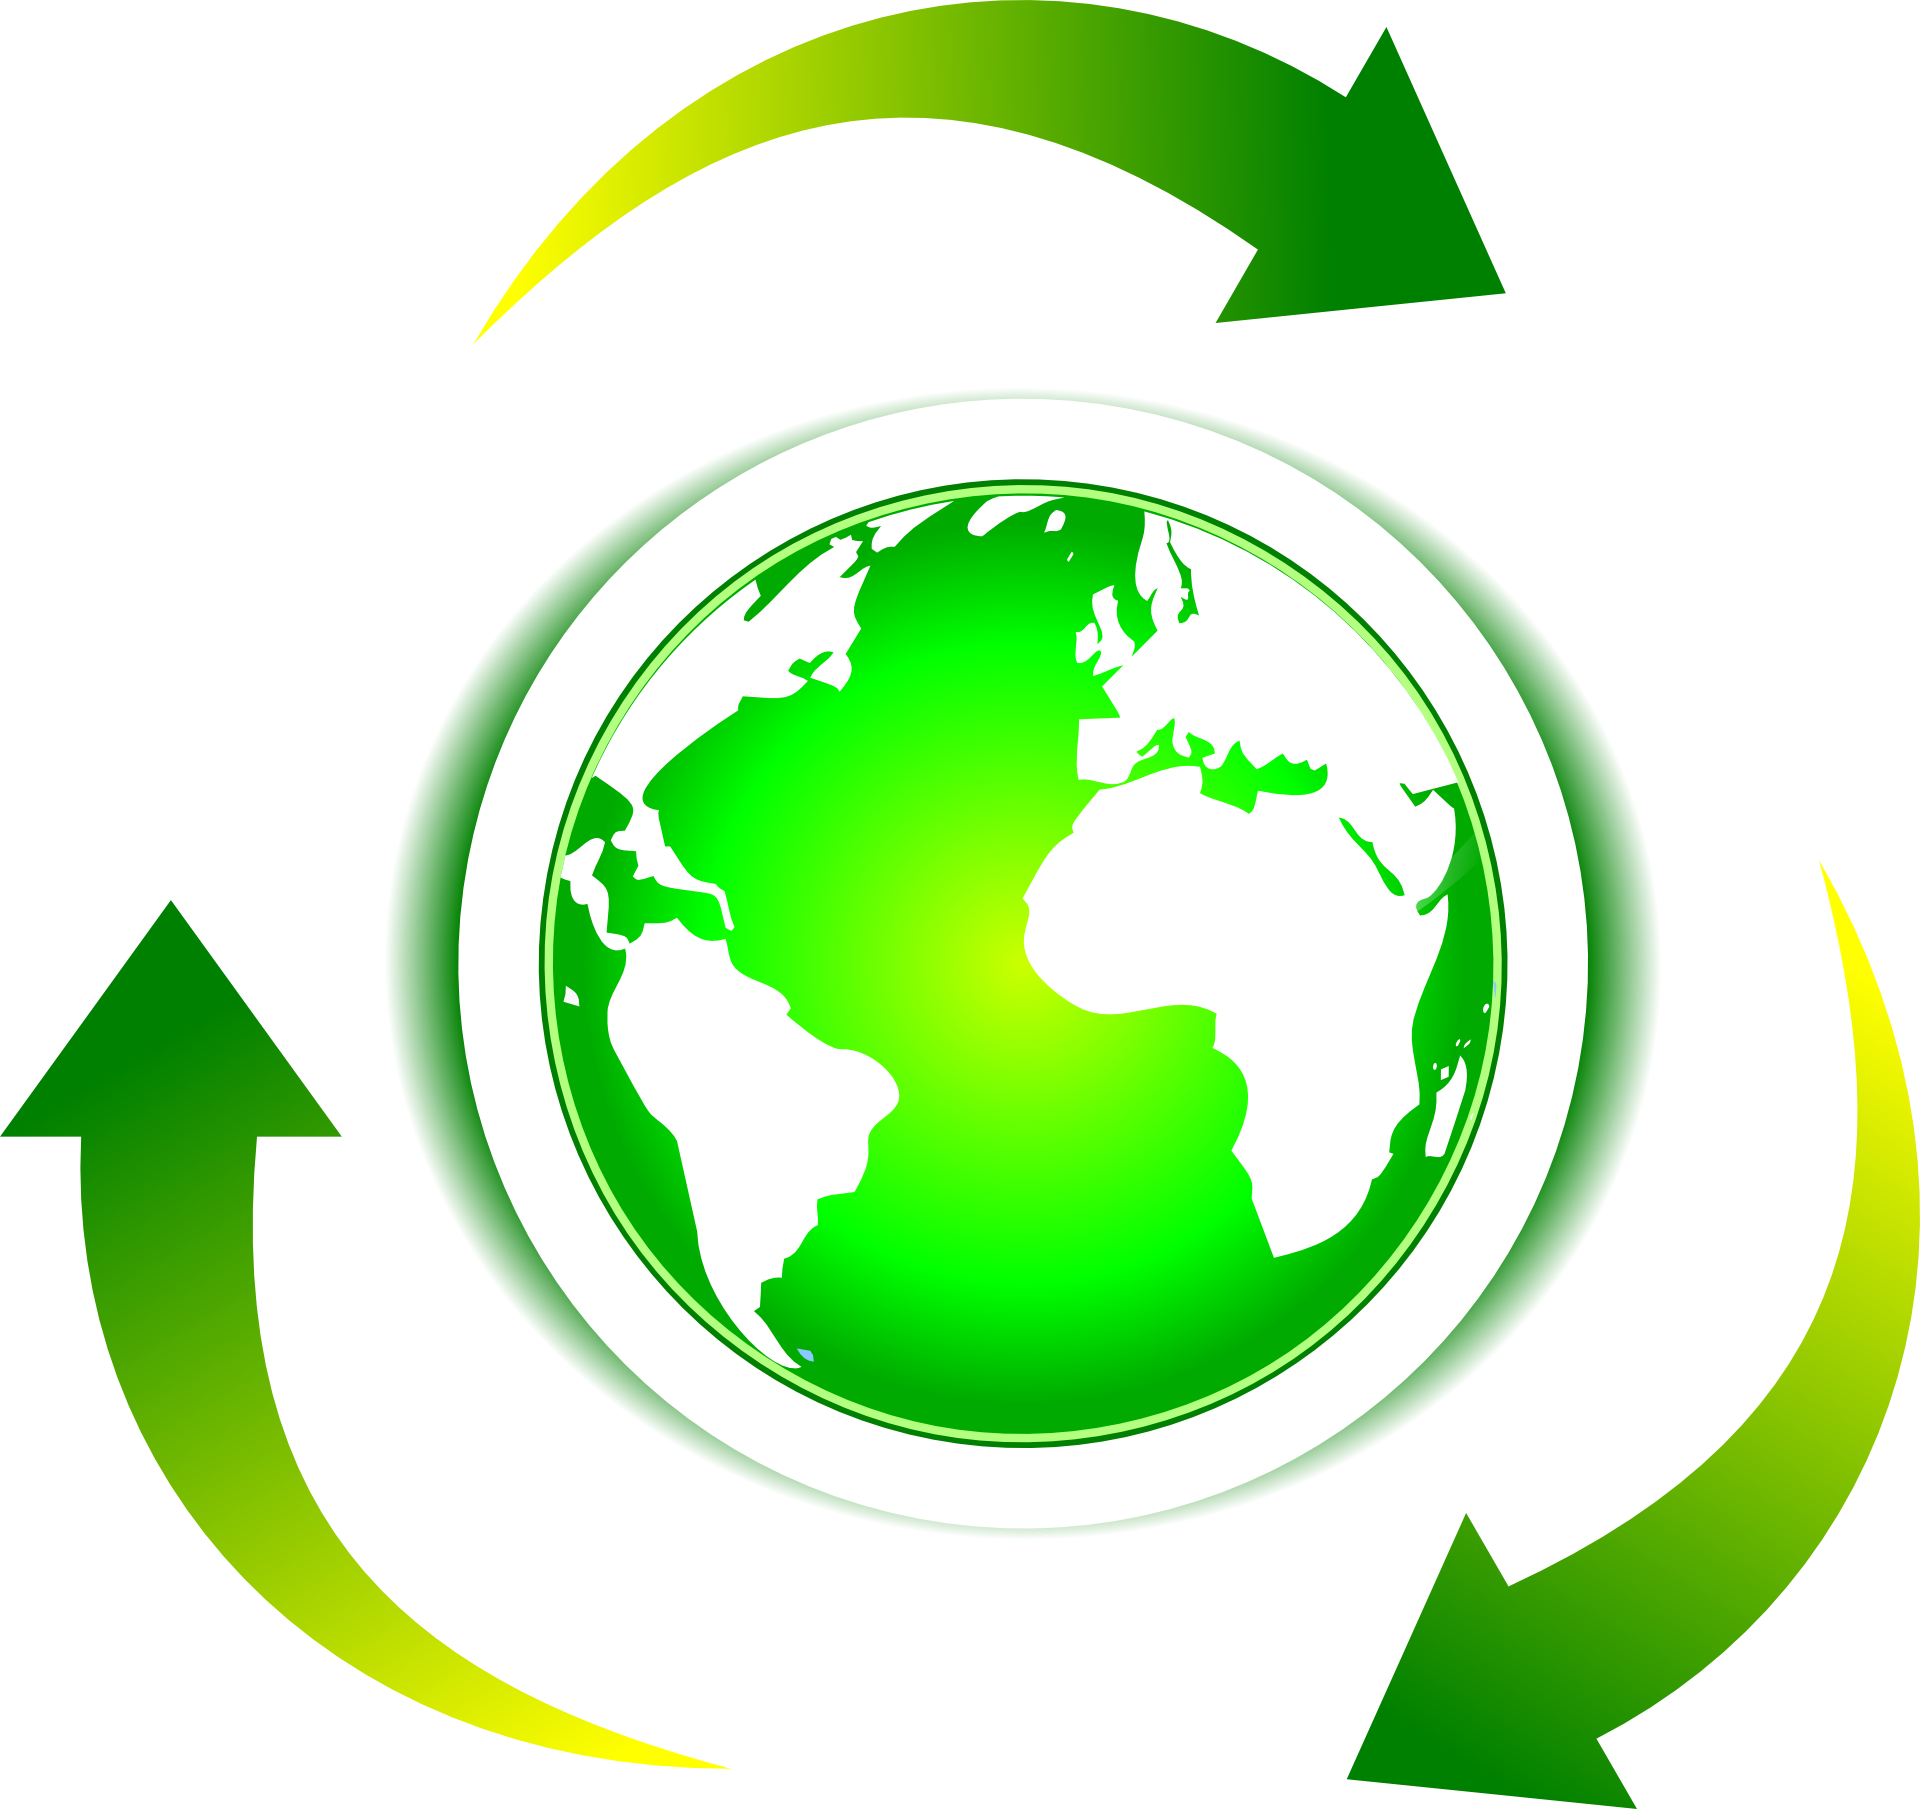 World ecology icon free image